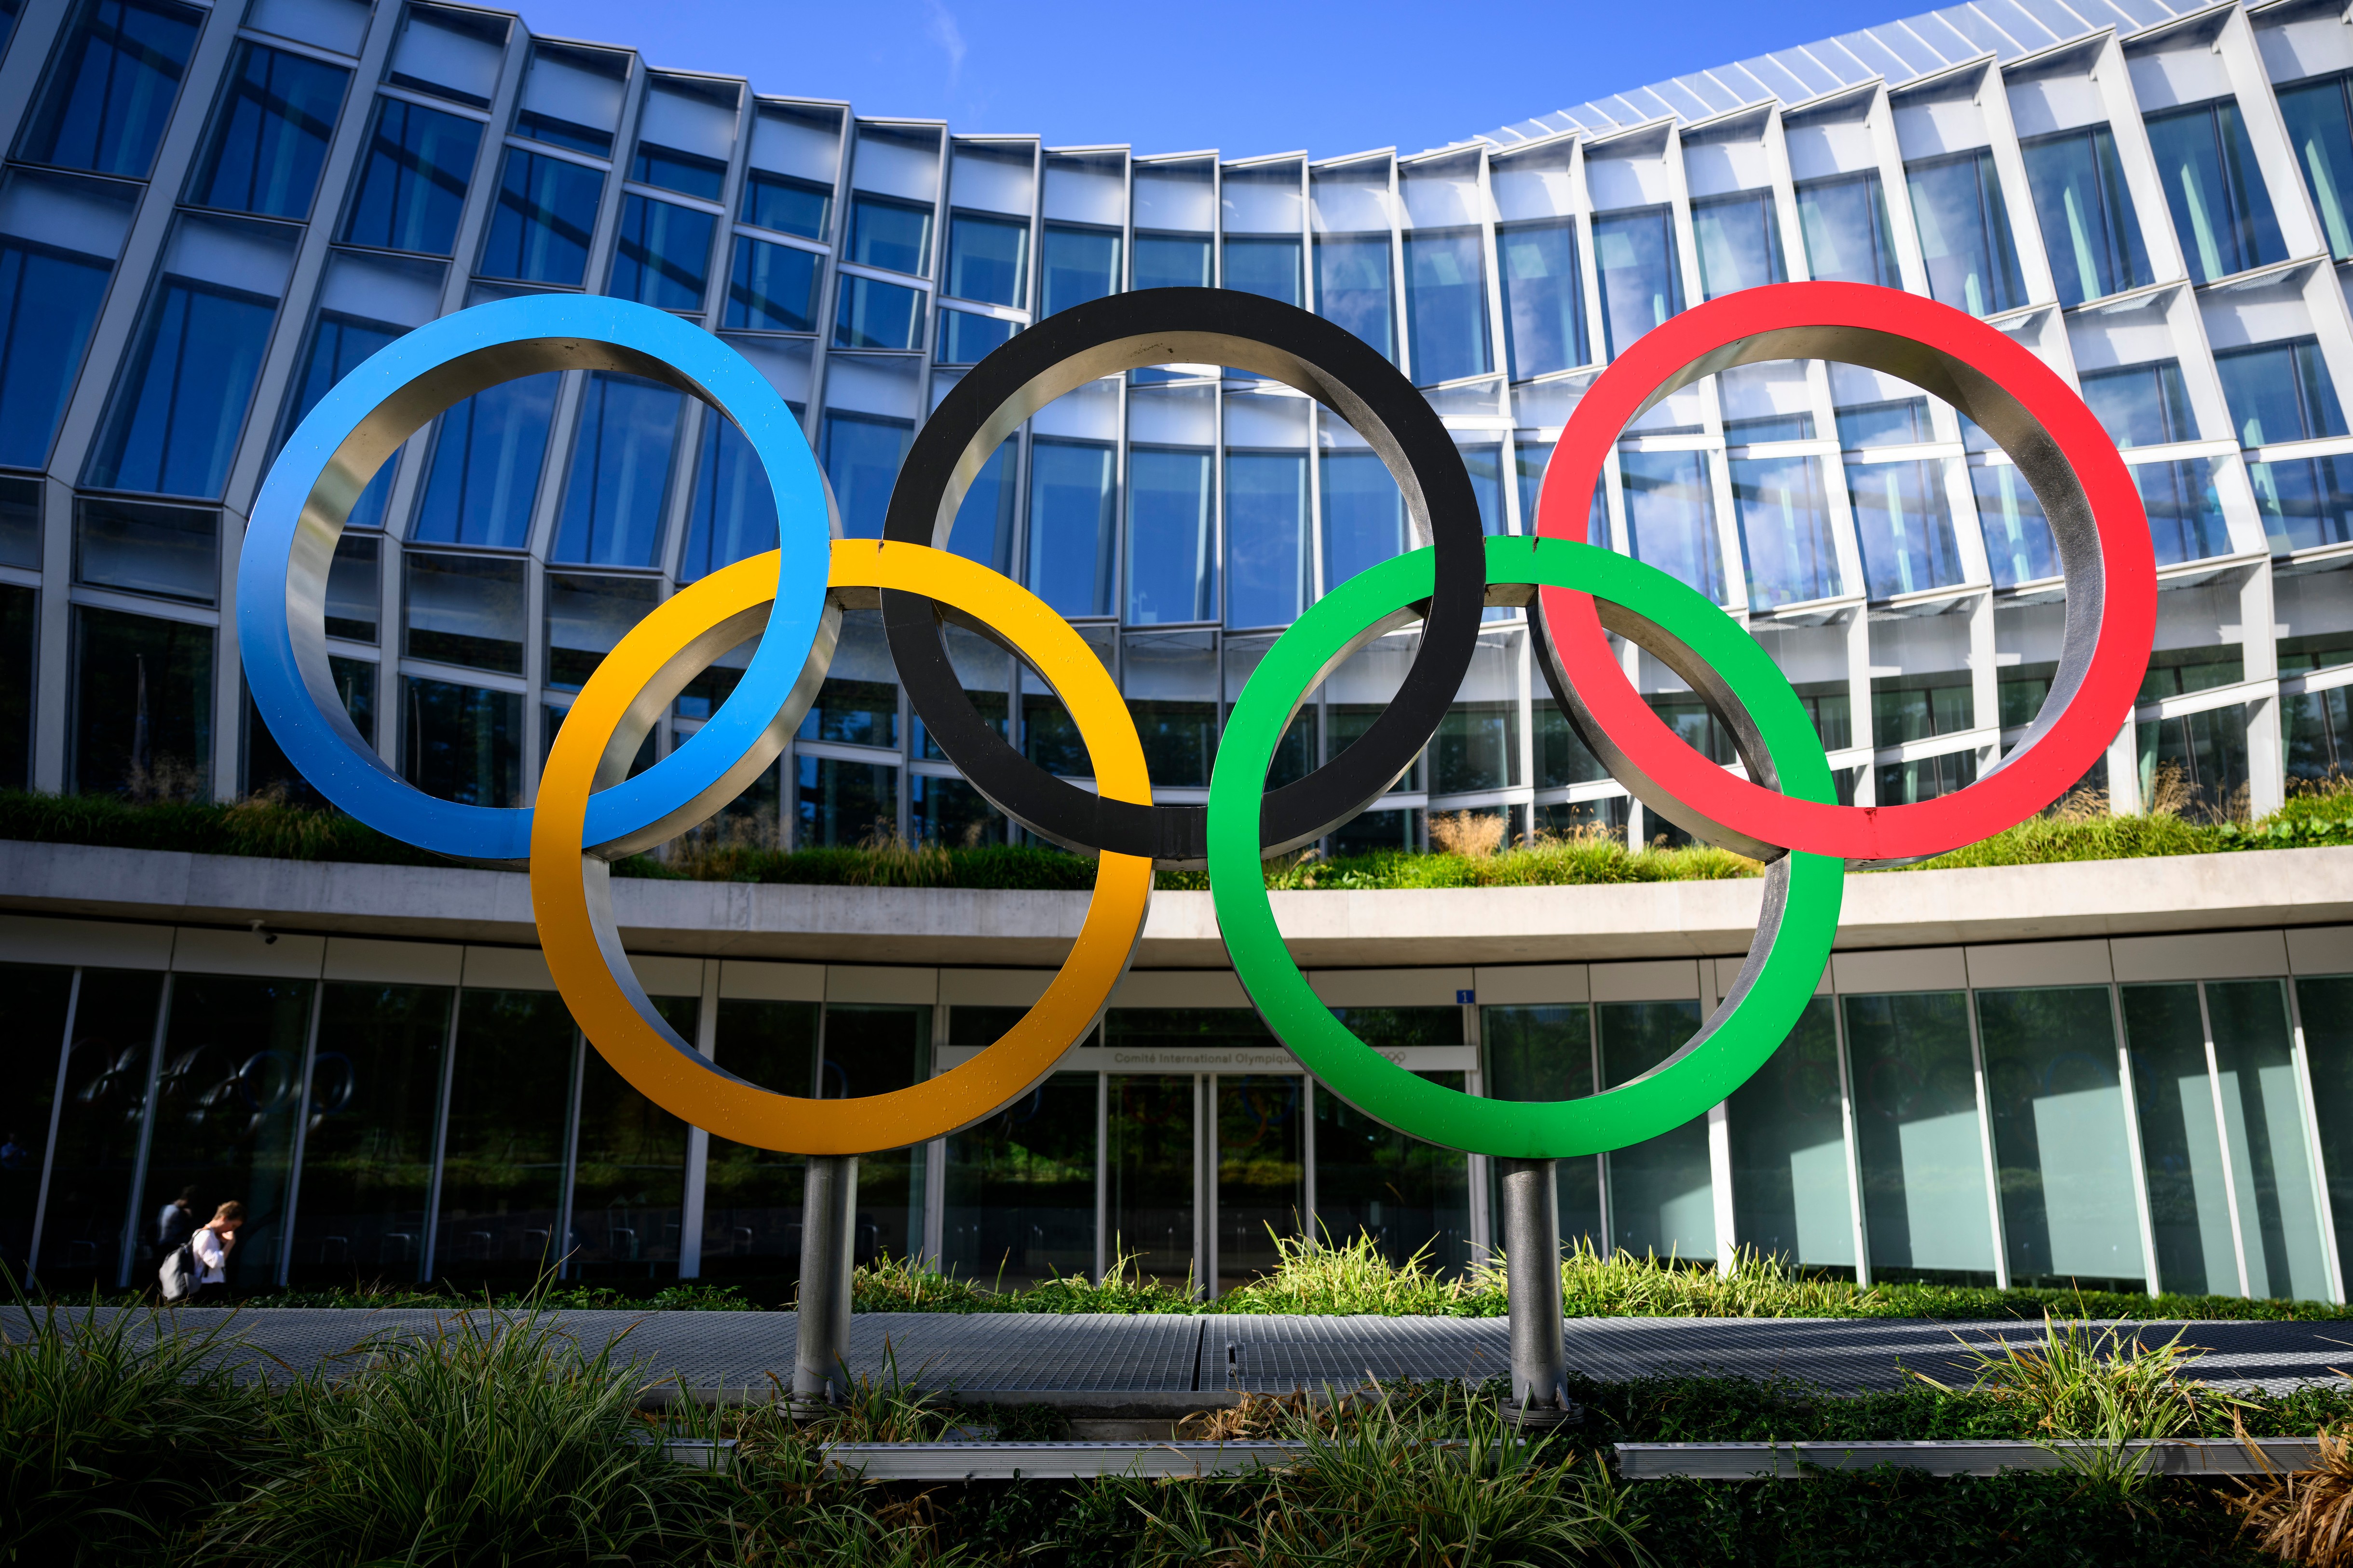 Ţările baltice şi Polonia se opun participării sportivilor ruşi şi belaruşi la Jocurile Olimpice